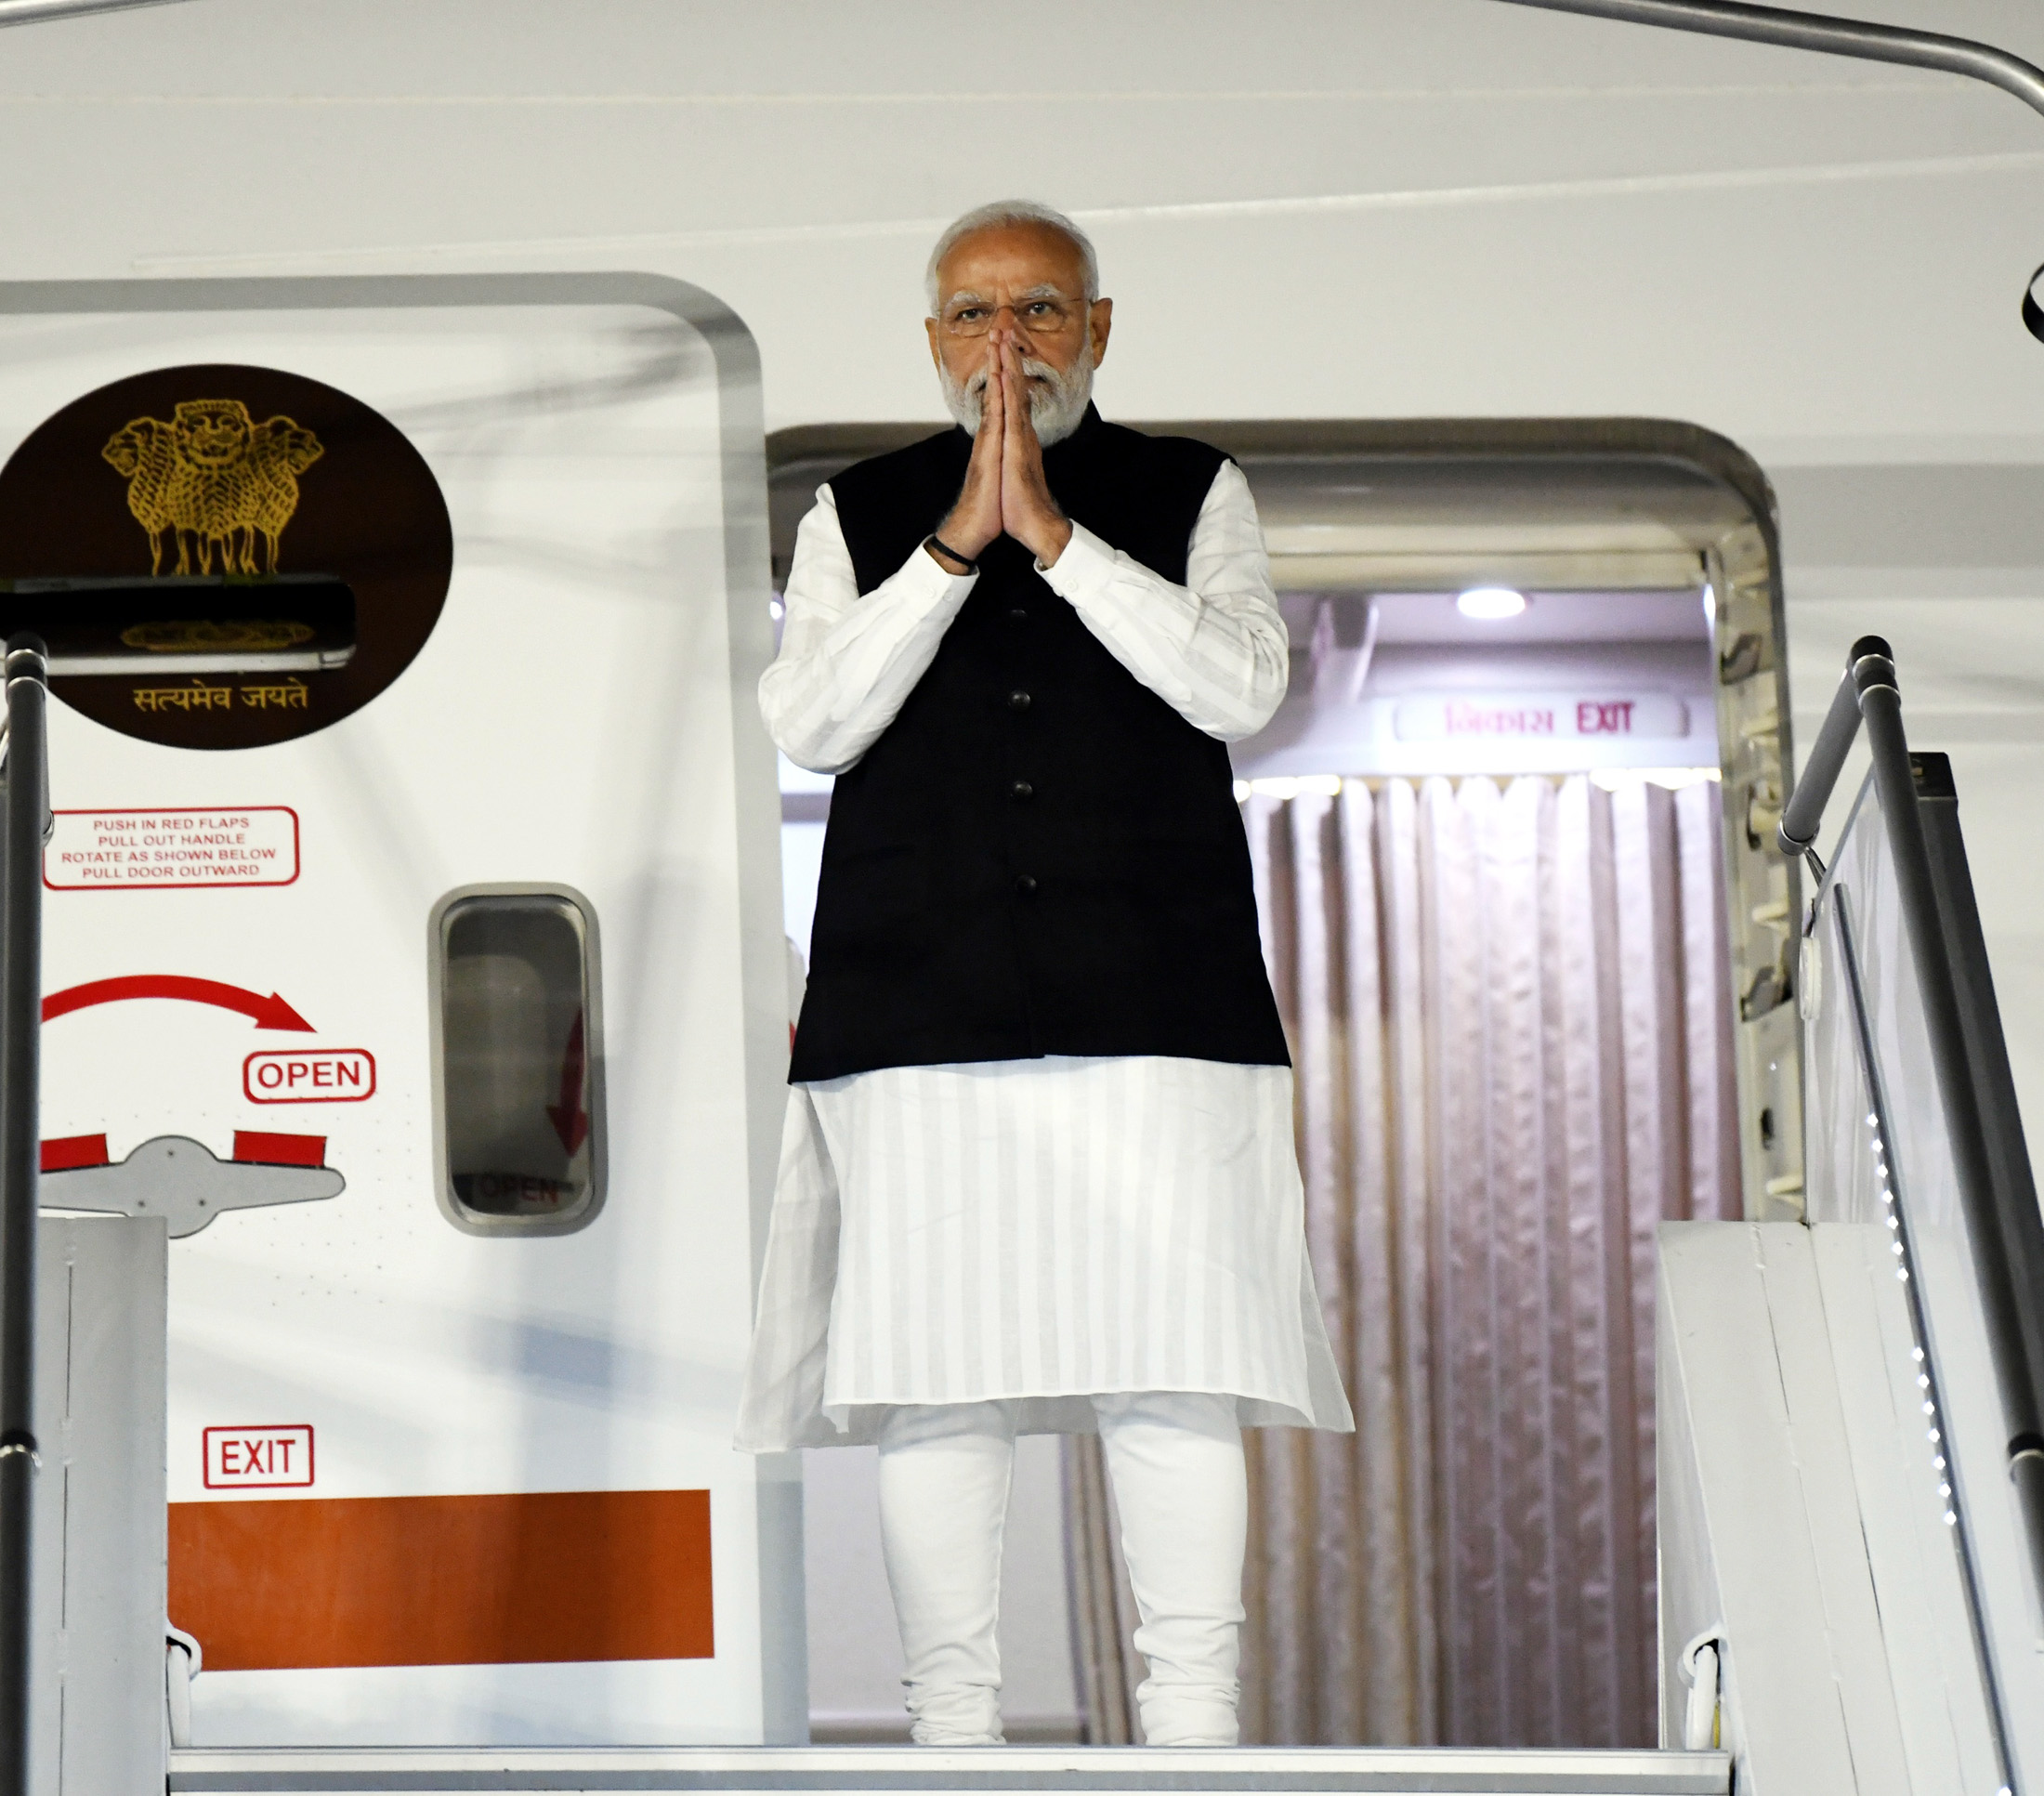 तीन दिवसीय यूरोप दौरे के बाद आज भारत आ रहे हैं प्रधानमंत्री मोदी, मैक्रों से की कई द्विपक्षीय मुद्दों पर चर्चा